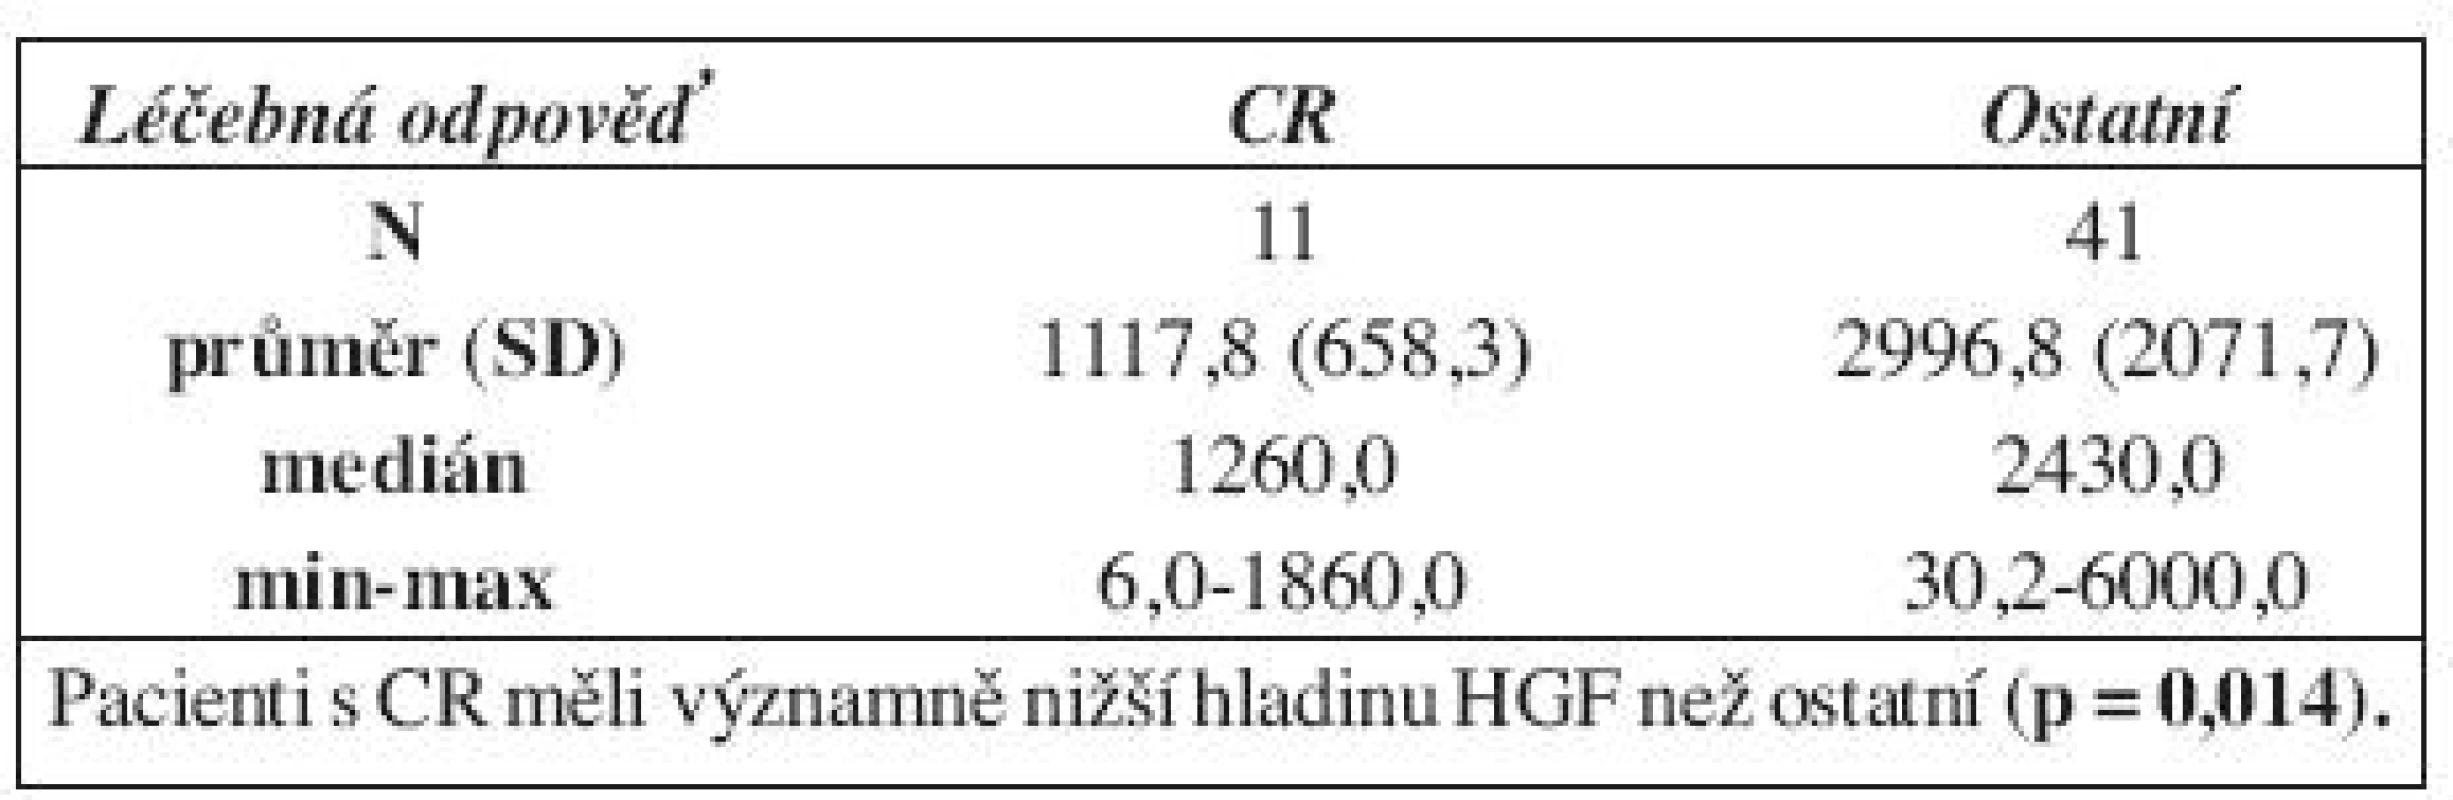 Koncentrace HGF před léčbou u pacientů s CR a ostatních.